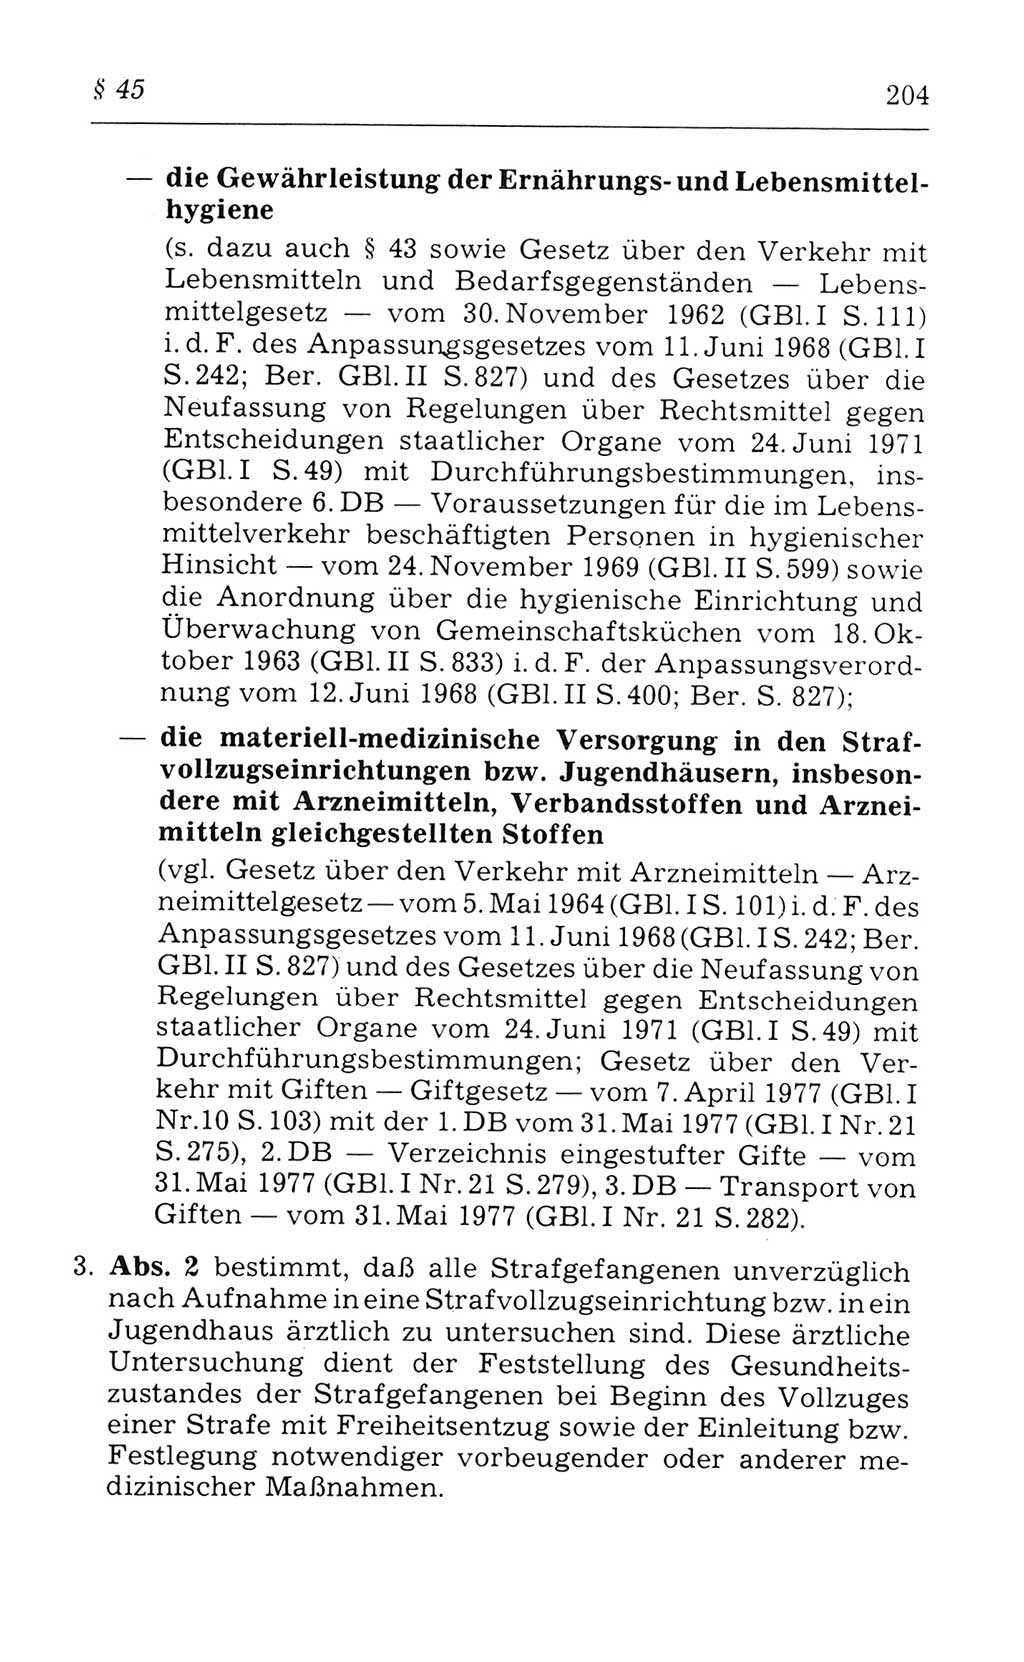 Kommentar zum Strafvollzugsgesetz [(StVG) Deutsche Demokratische Republik (DDR)] 1980, Seite 204 (Komm. StVG DDR 1980, S. 204)